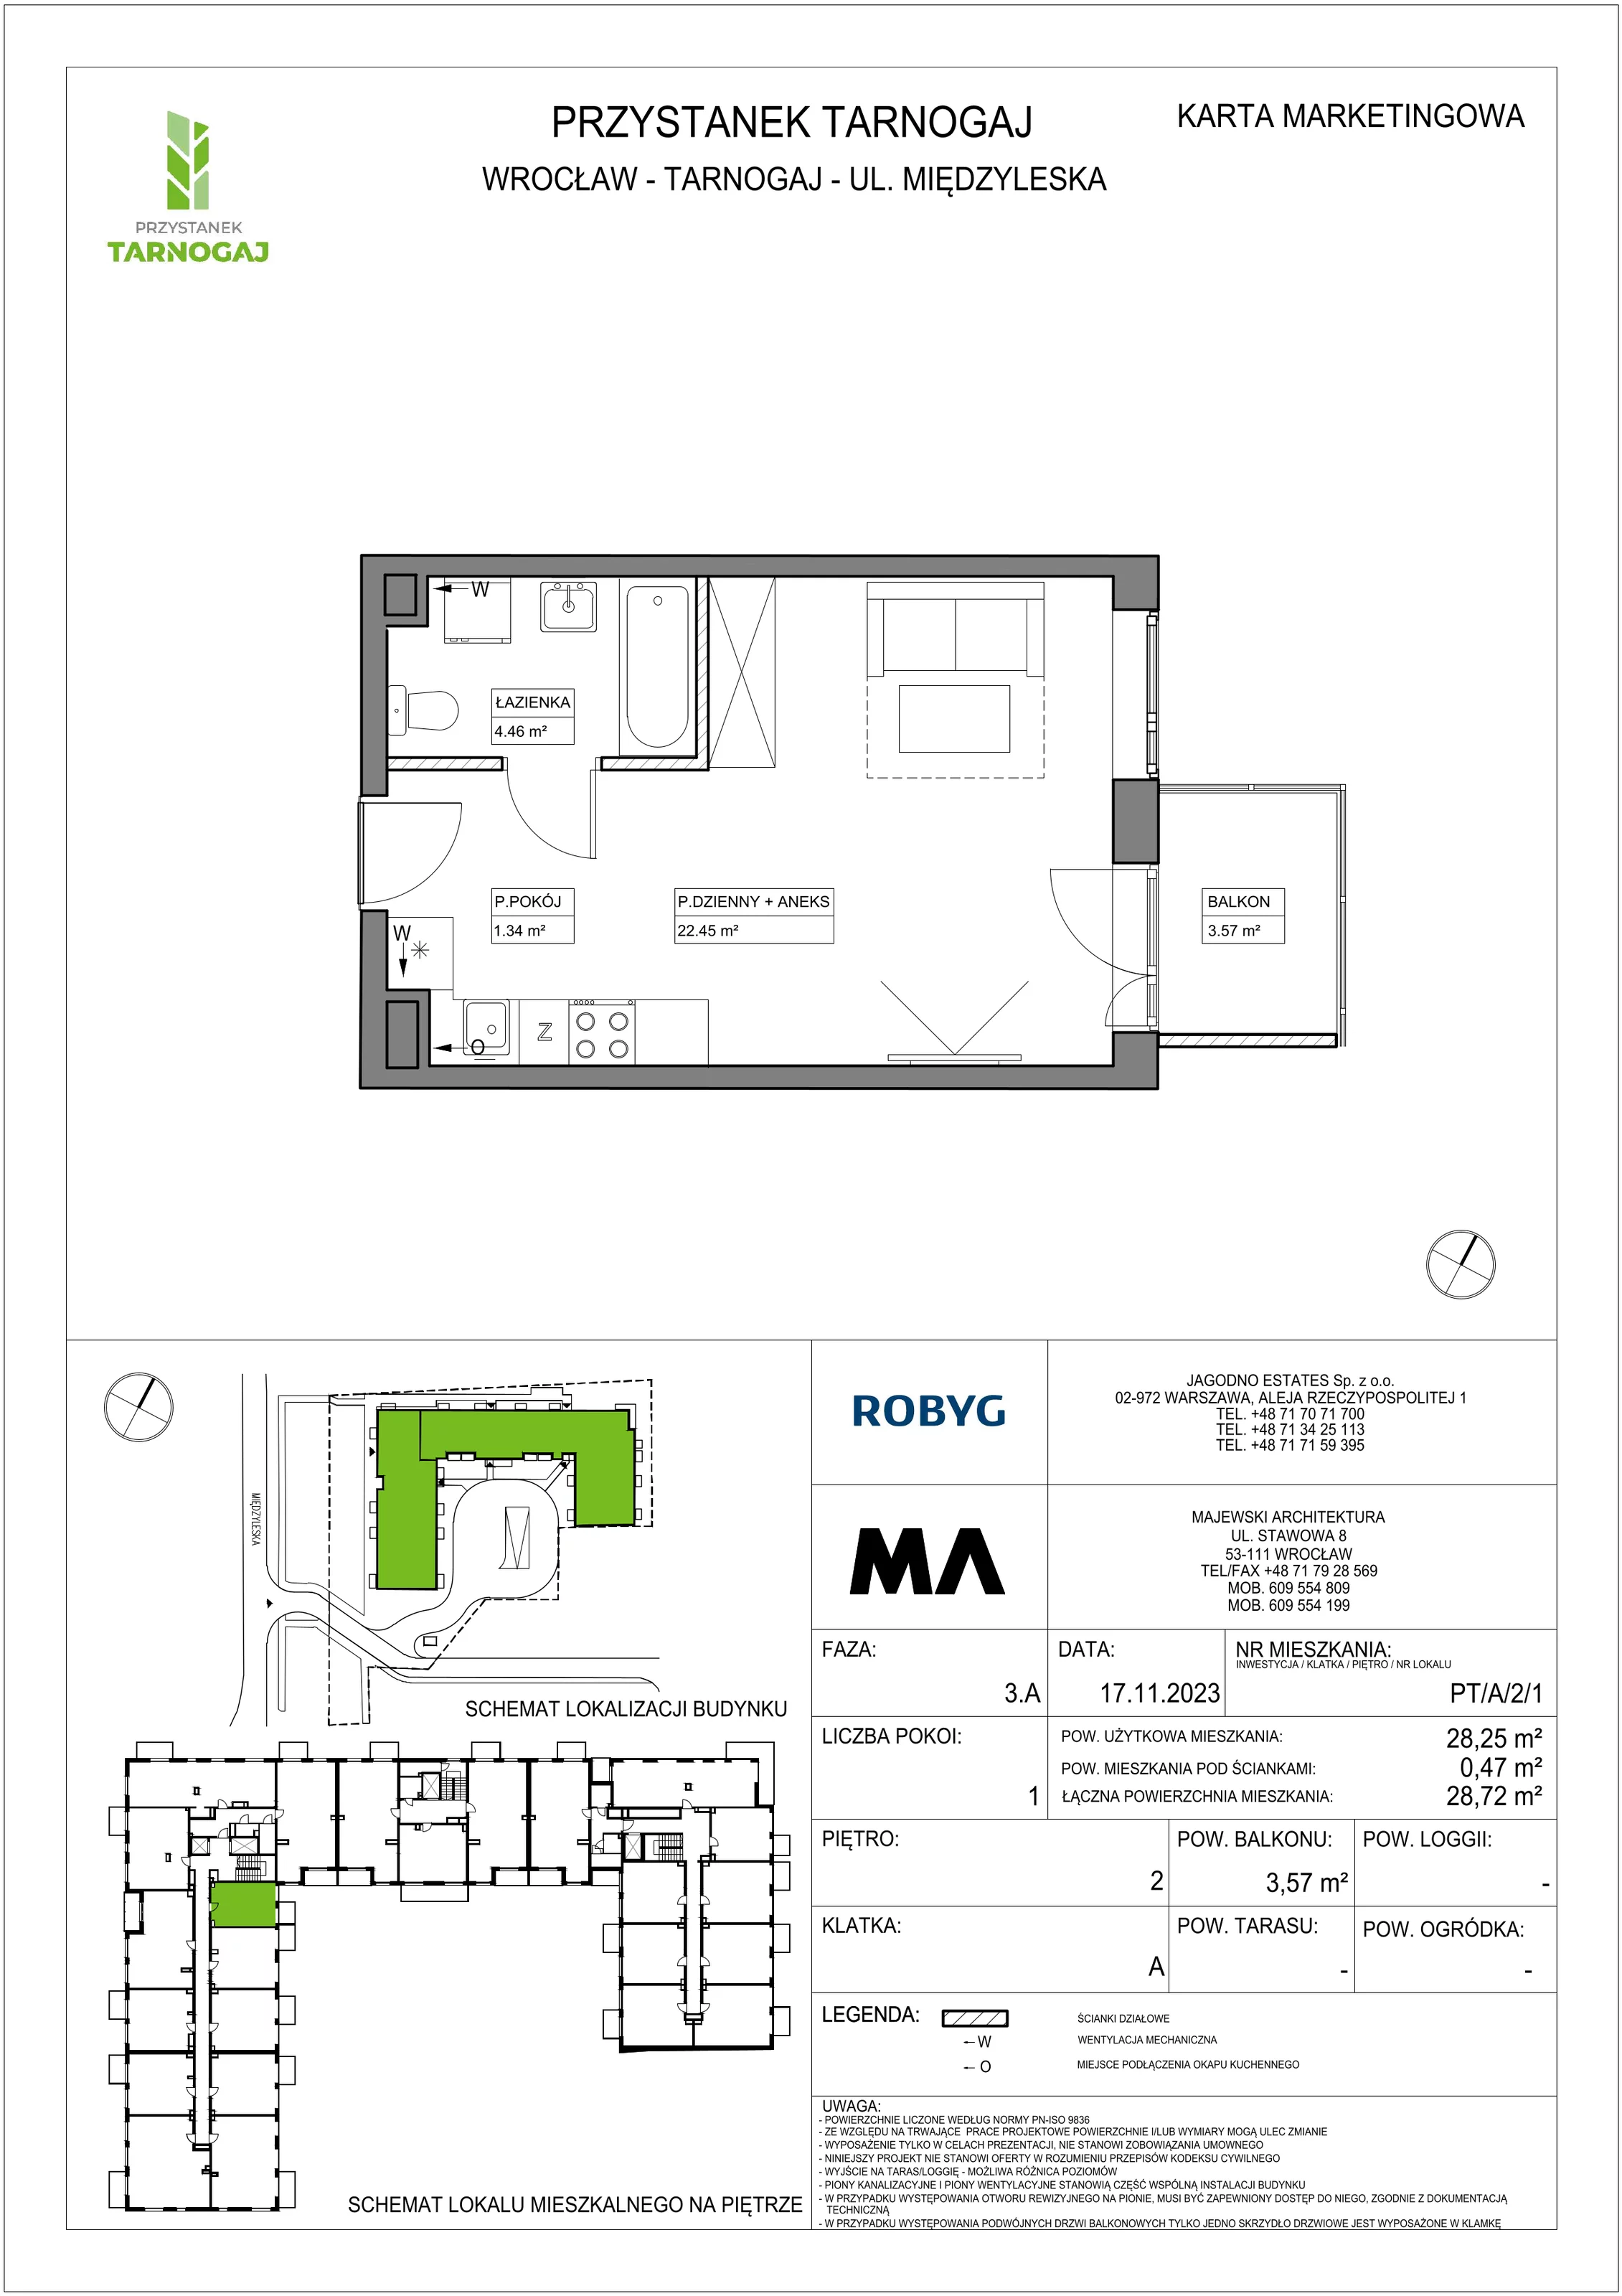 Mieszkanie 28,25 m², piętro 2, oferta nr PT/A/2/1, Przystanek Tarnogaj, Wrocław, Tarnogaj, Krzyki, ul. Międzyleska / Gazowa